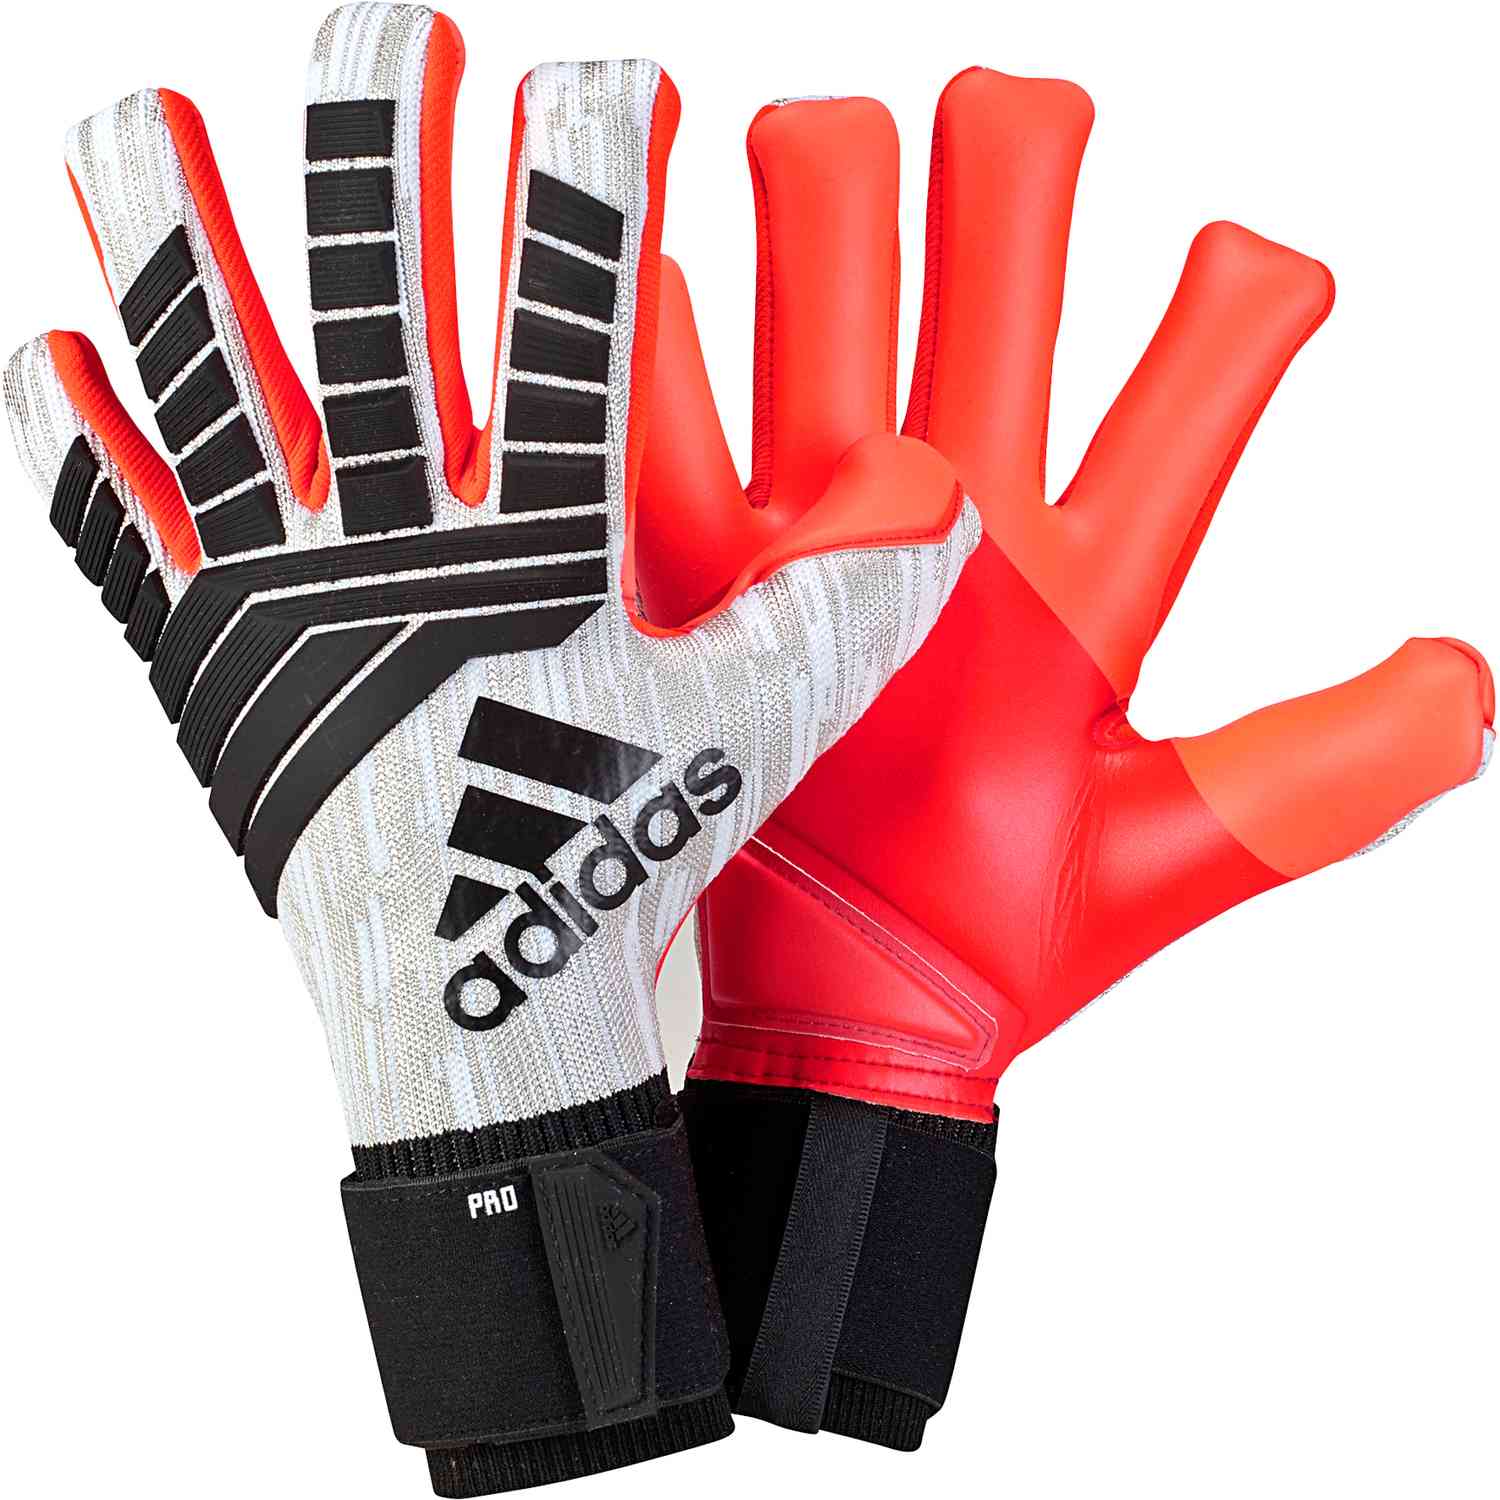 Predator Pro Goalkeeper Gloves - Neuer - White/Black - Soccer Master